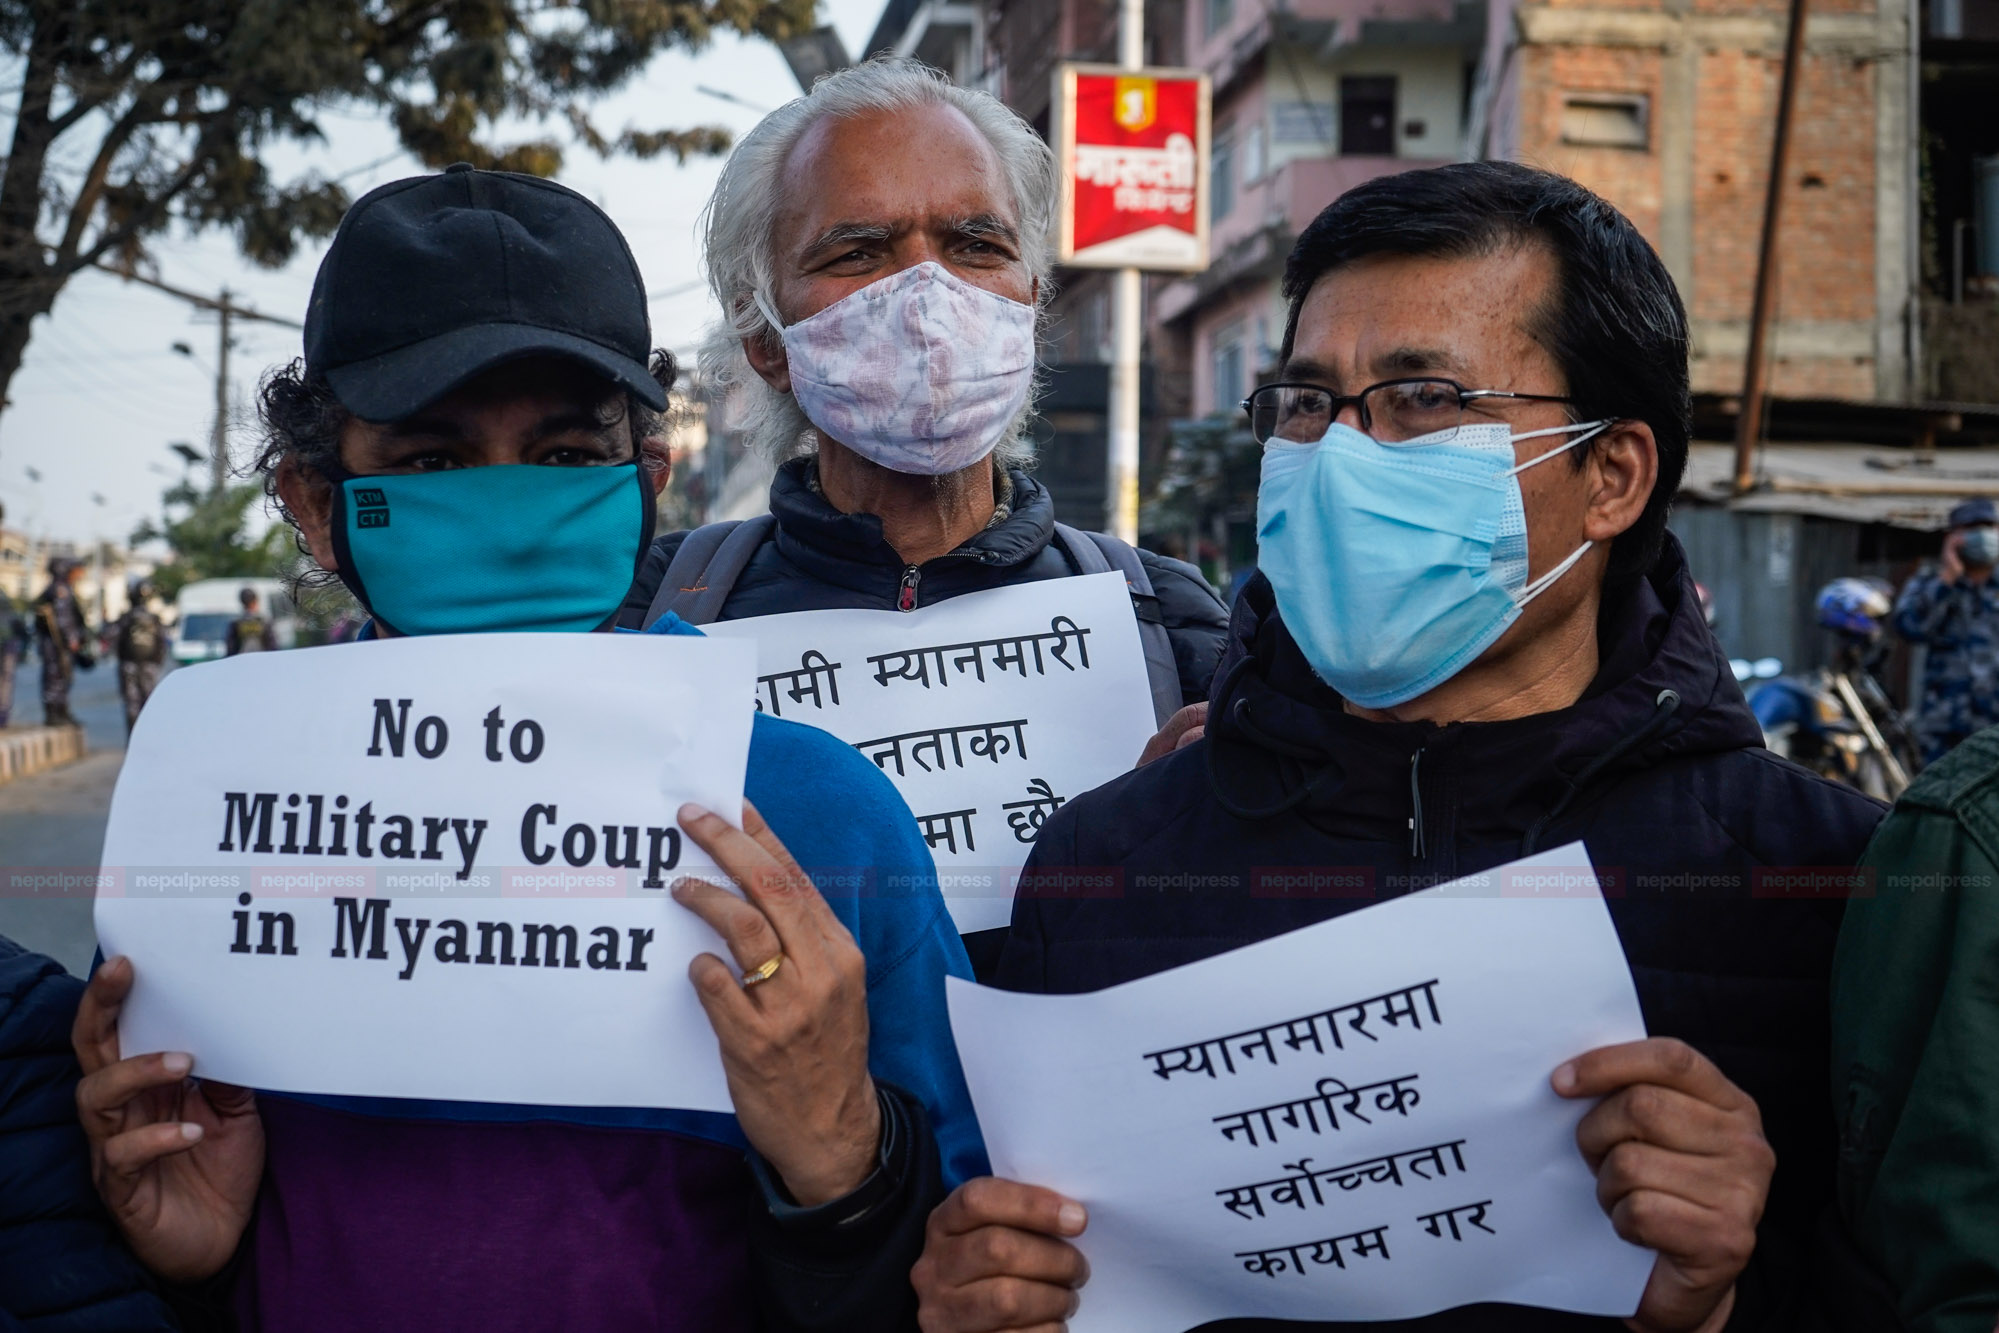 म्यानमारको सेनाविरुद्ध काठमाडौंमा प्रदर्शन, ‘कु’ फिर्ता लिन चेतावनी